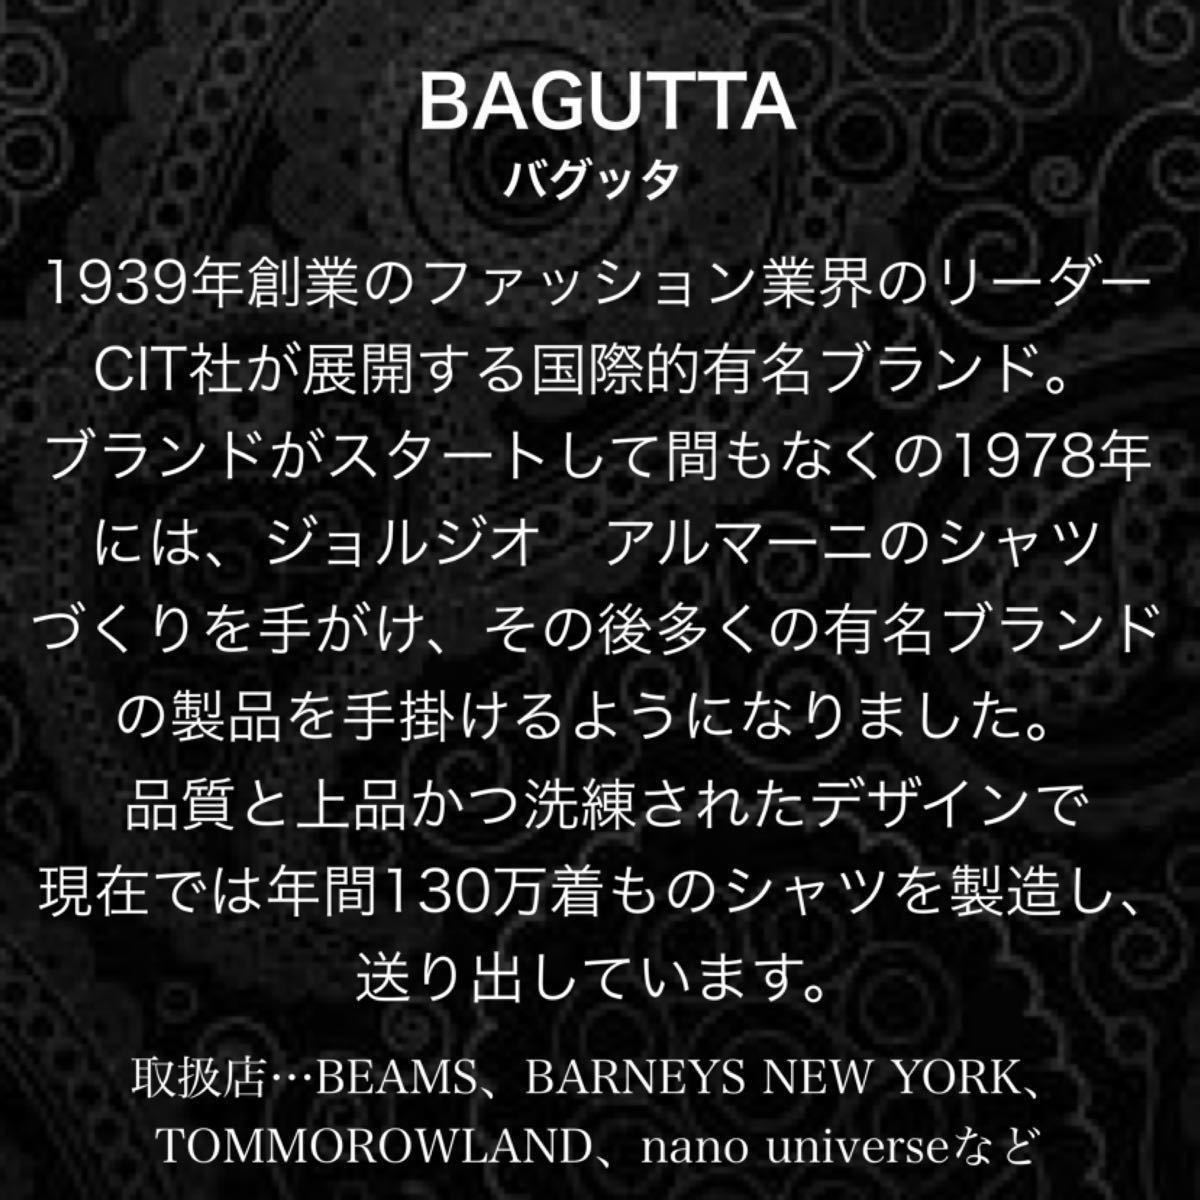 【新品タグ付】最高峰 Cit社 BAGUTTA シャツ コットン ワイドカラー チェック柄 ピンク ブルー Mサイズ 40